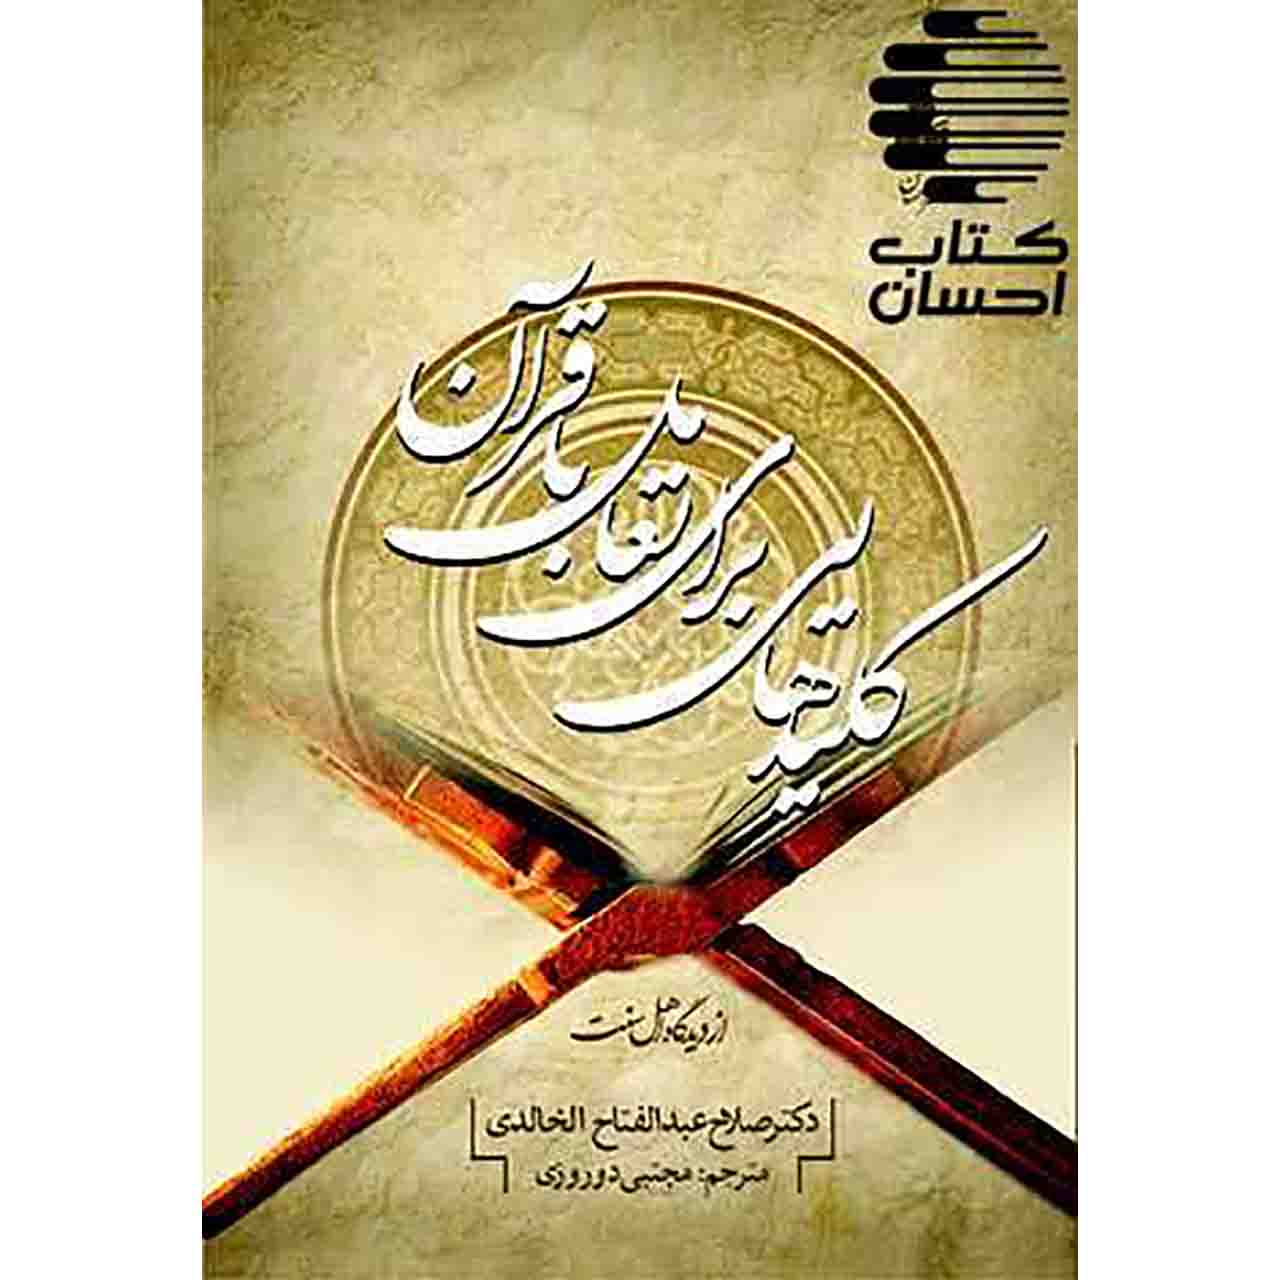 کلیدهایی برای تعامل با قرآن